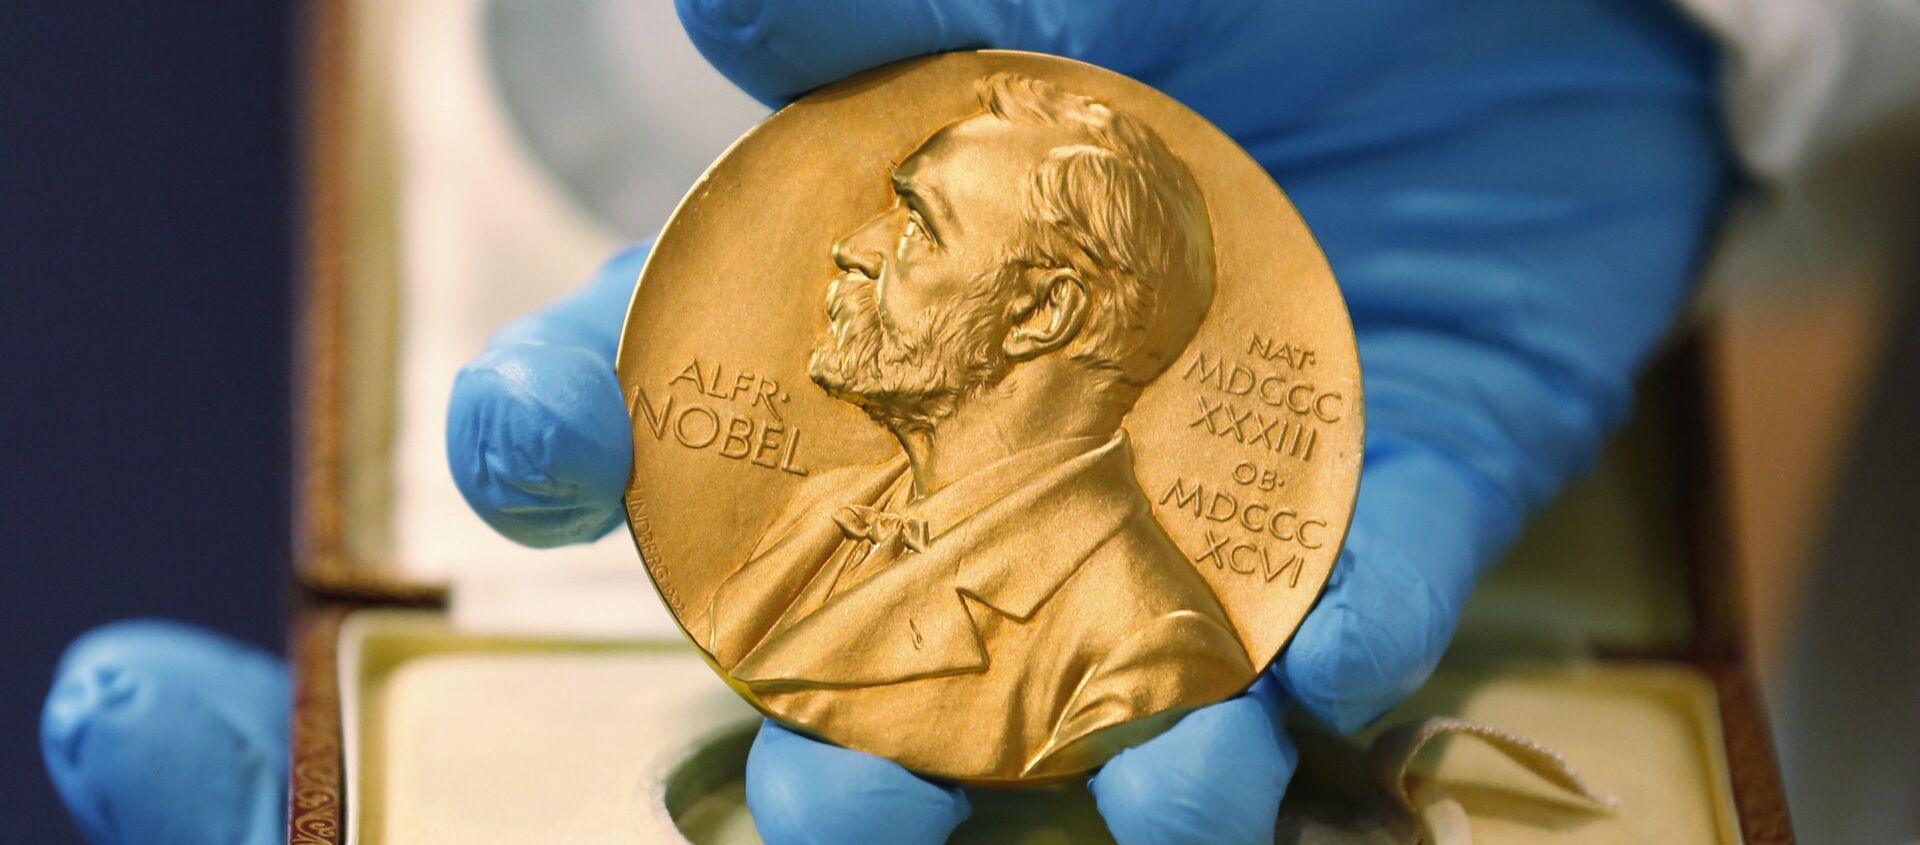 Nobel Prize medal - Sputnik Türkiye, 1920, 11.10.2019